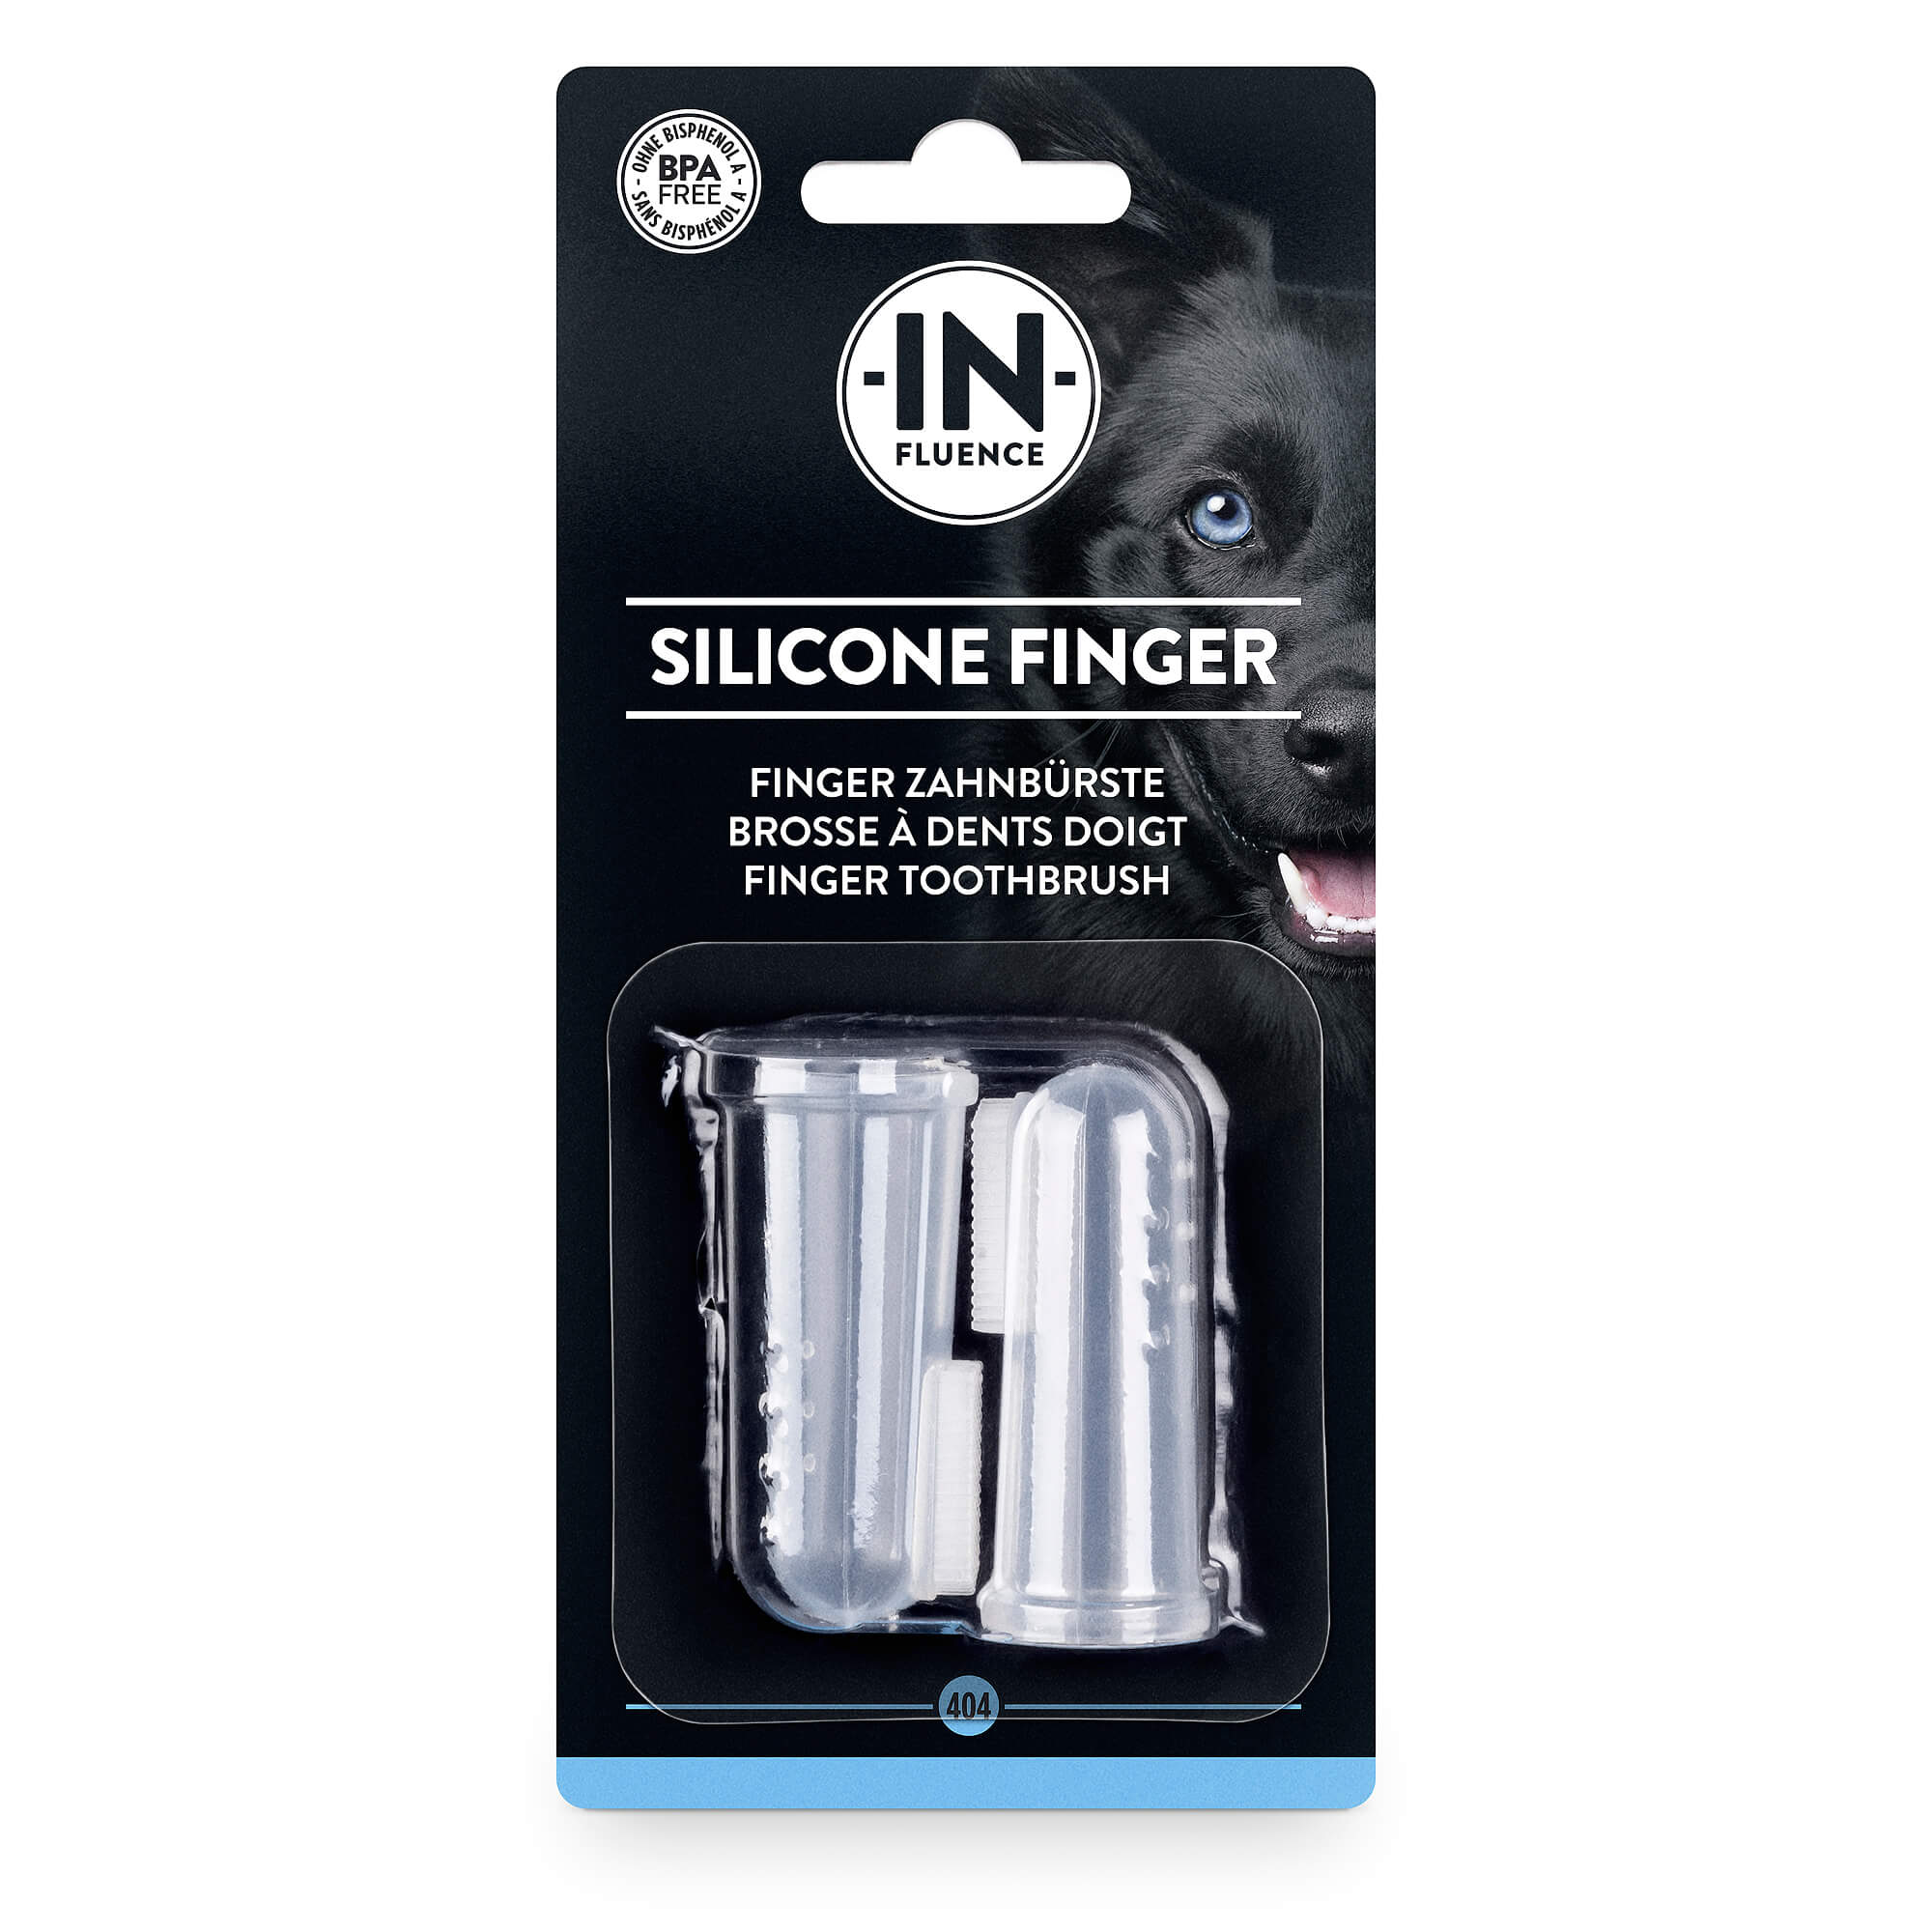 In-Fluence Silicone Finger Finger Zahnbürste (2 Stk.)